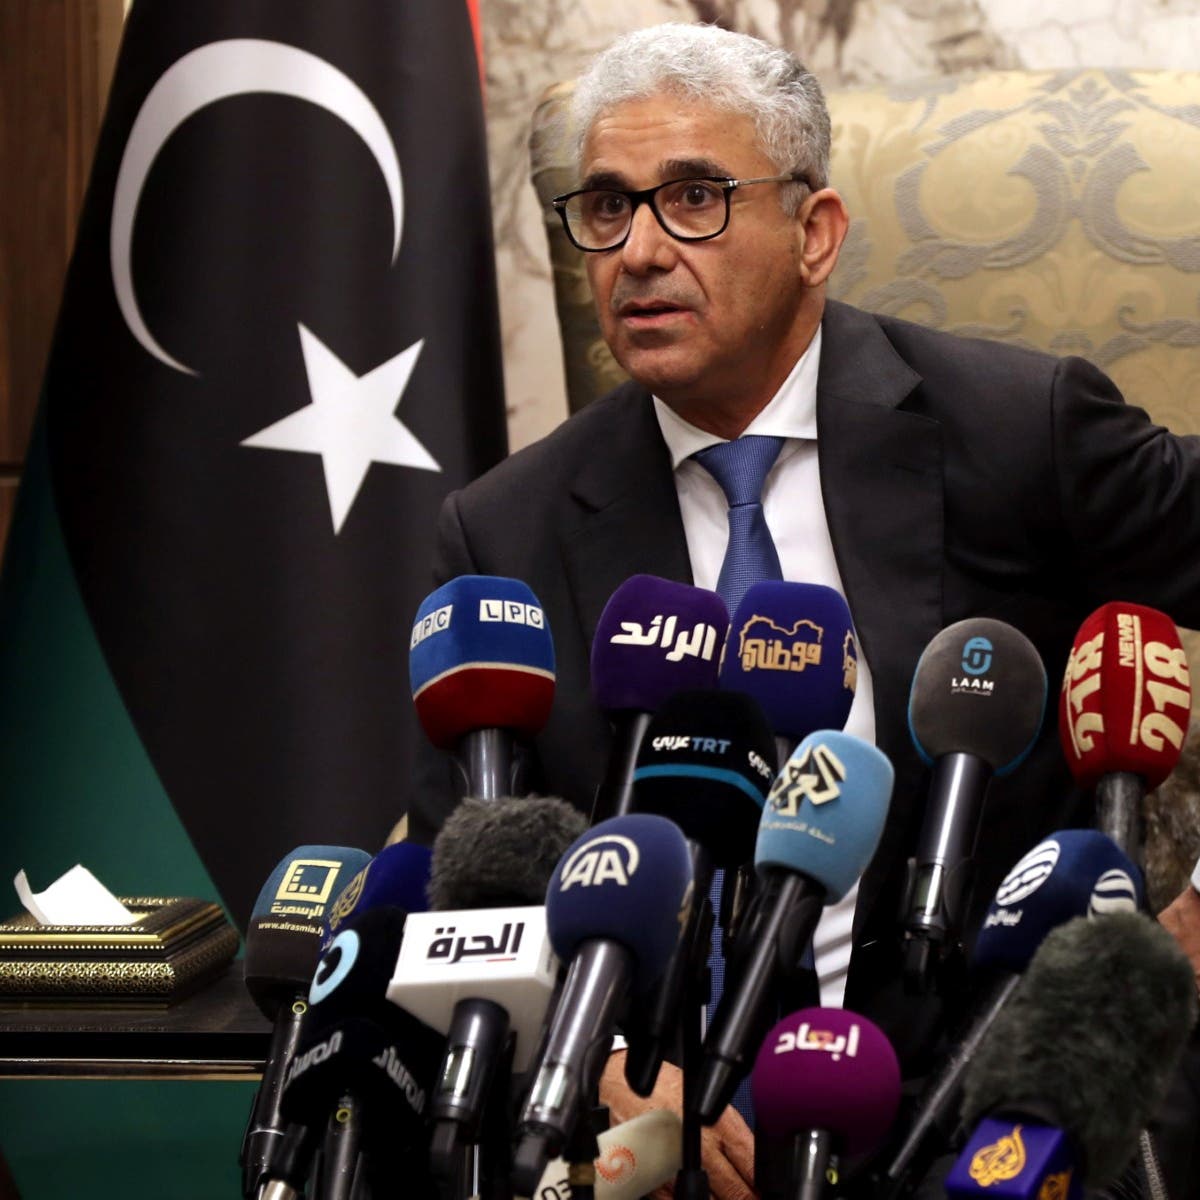 باشاغا: الحكومة الجديدة لن تمارس مهامها إلا من طرابلس